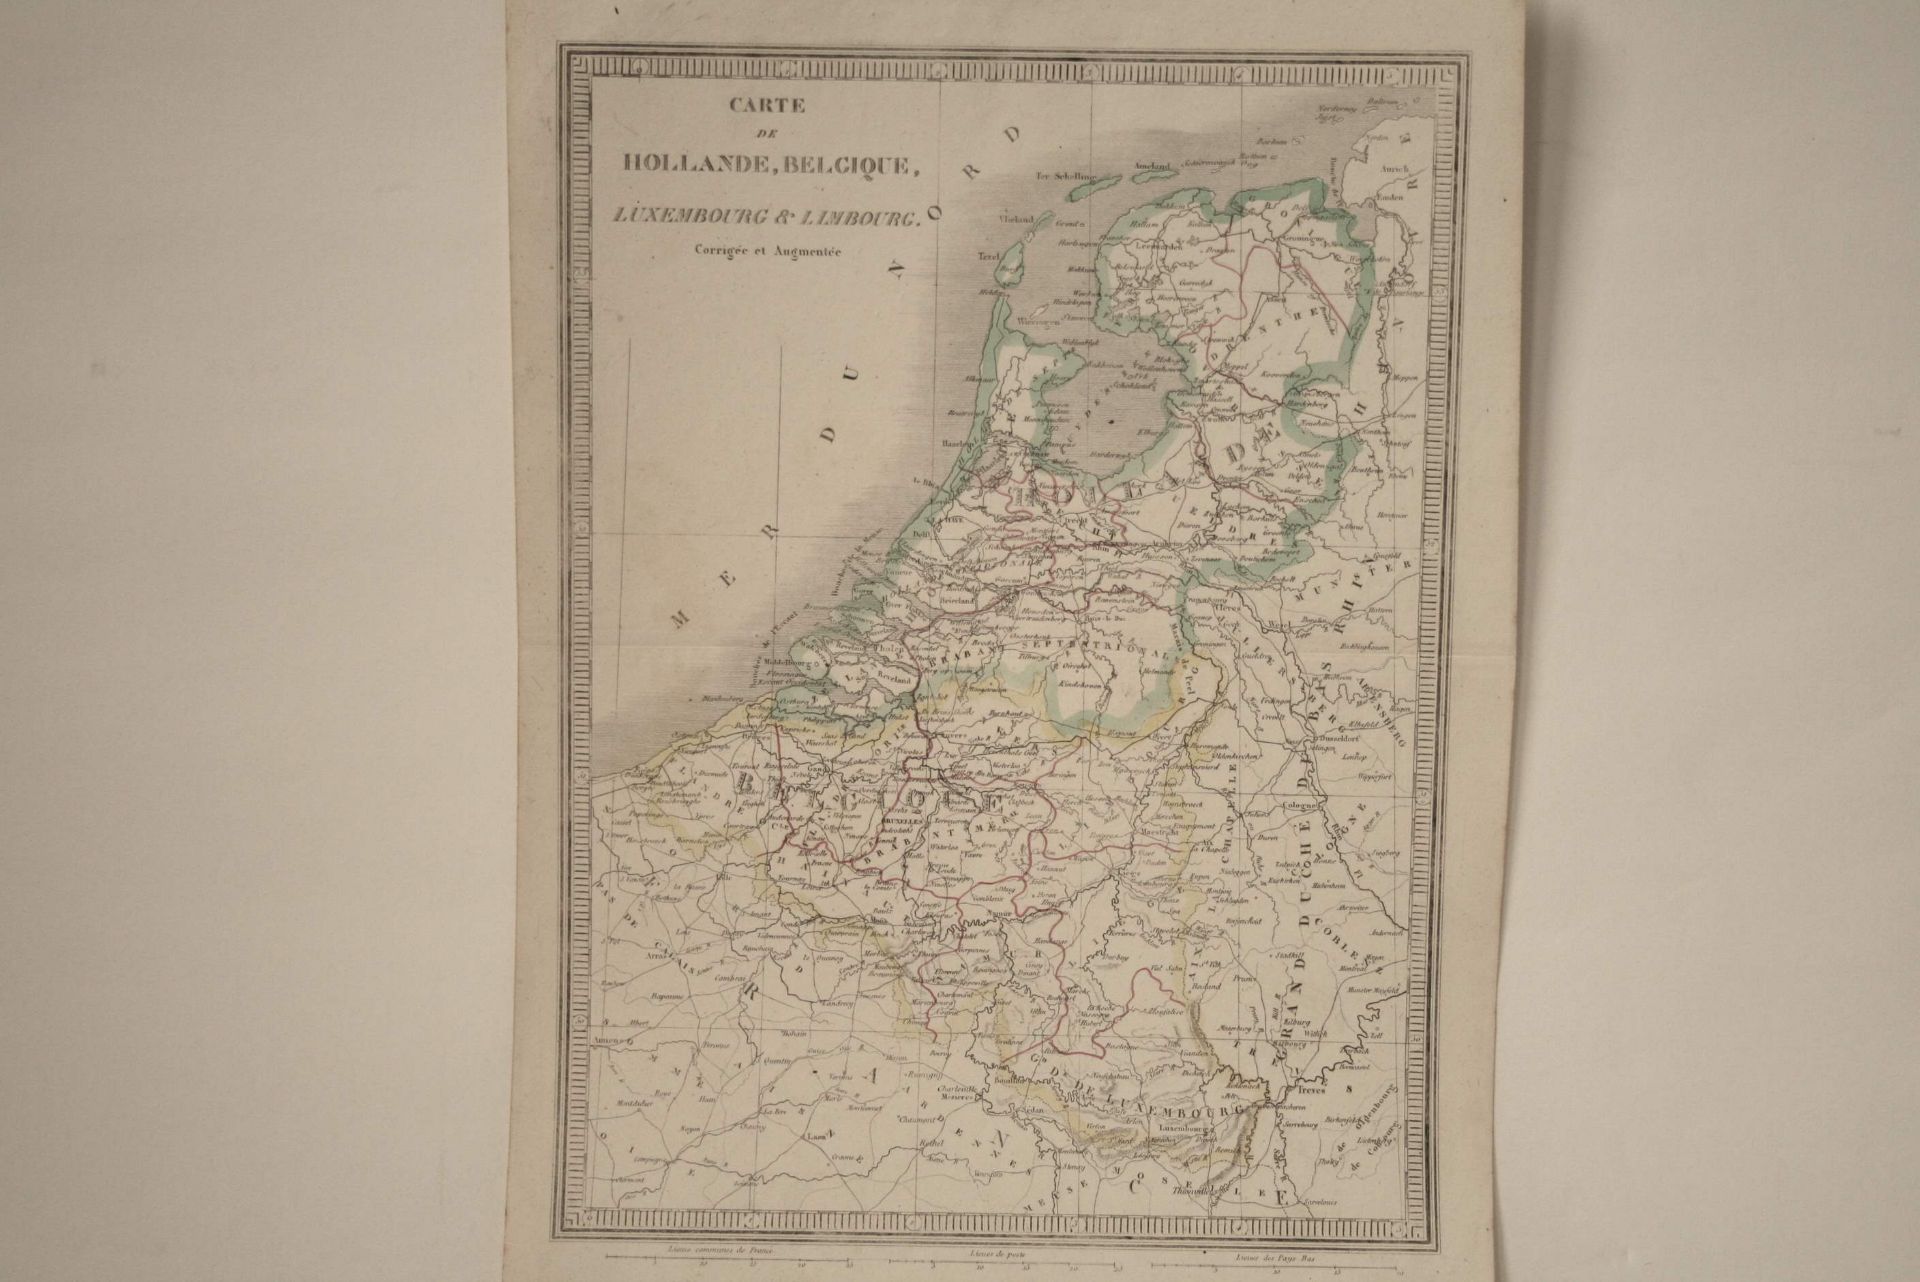 Carte du Benelux aquarellée : "Carte de Hollande, Belgique, Luxembourg & Limbourg [...]